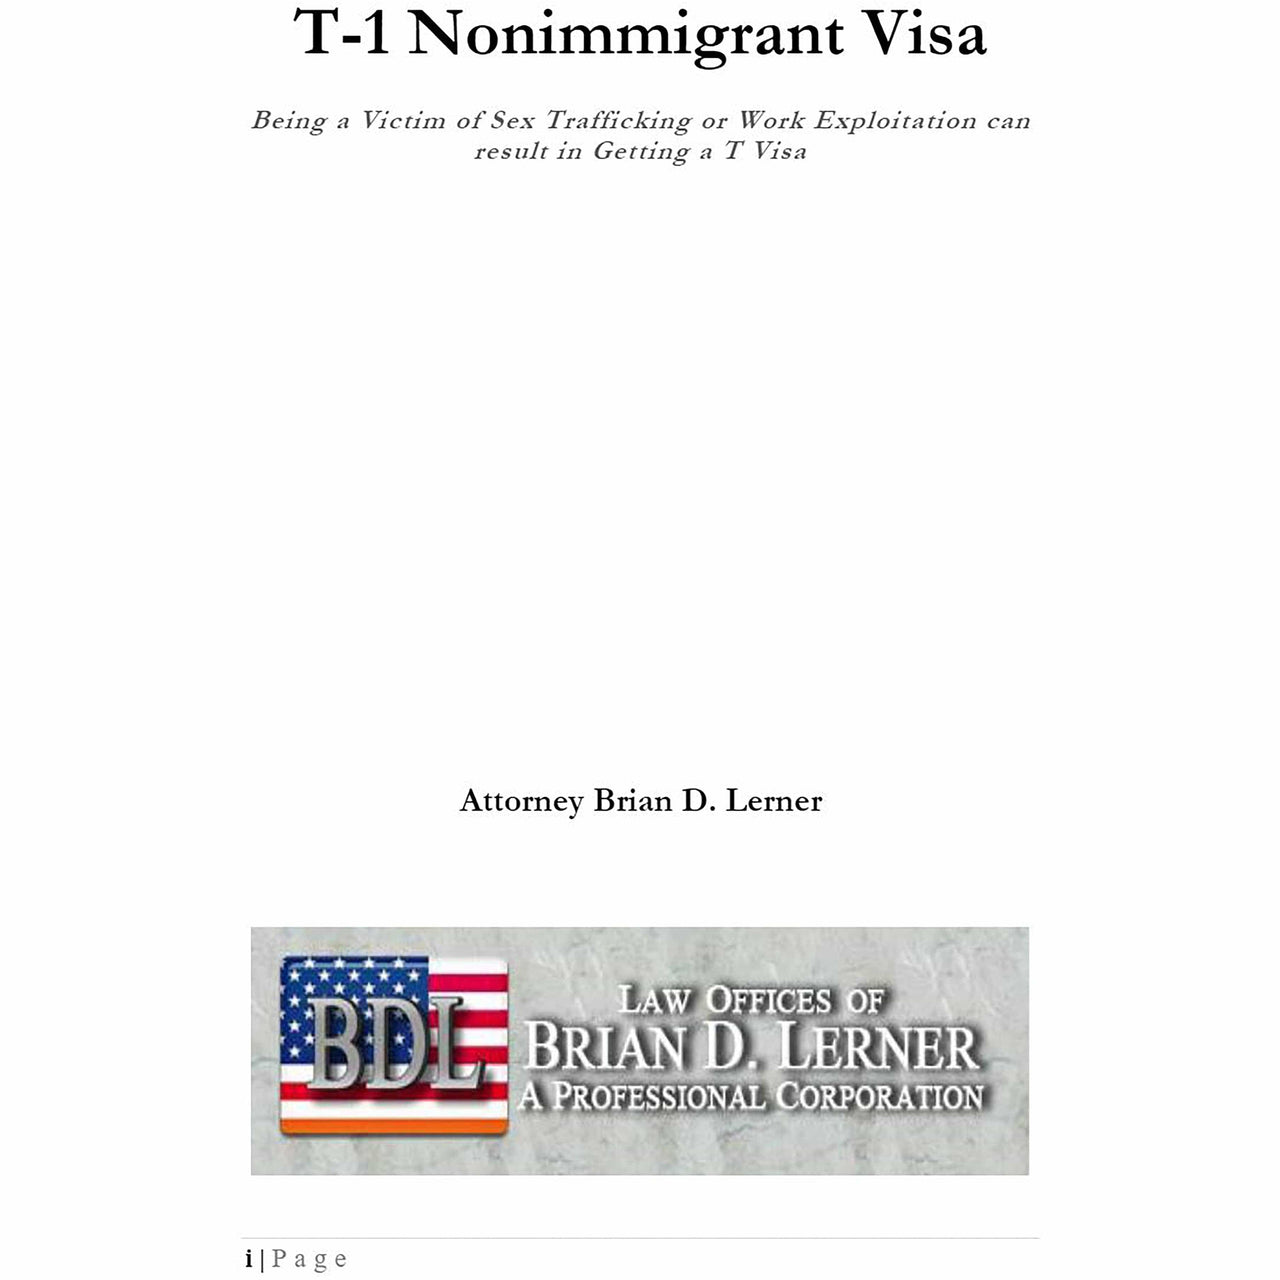 Rocket Immigration Petitions Immigration Visa T-1 Nonimmigrant Visa